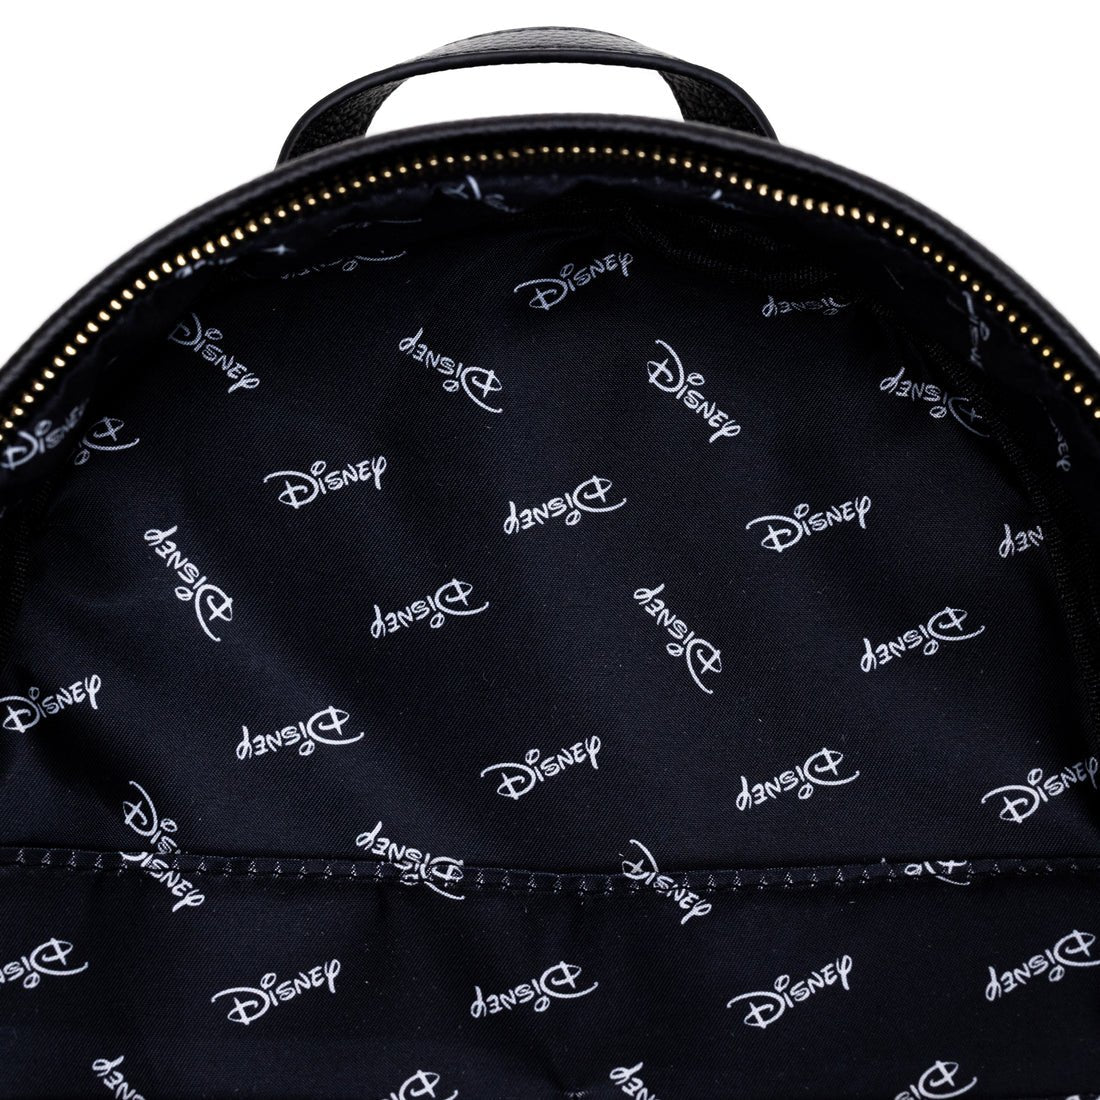 WondaPop High Fashion Disney Lilo and Stitch Mini Backpack